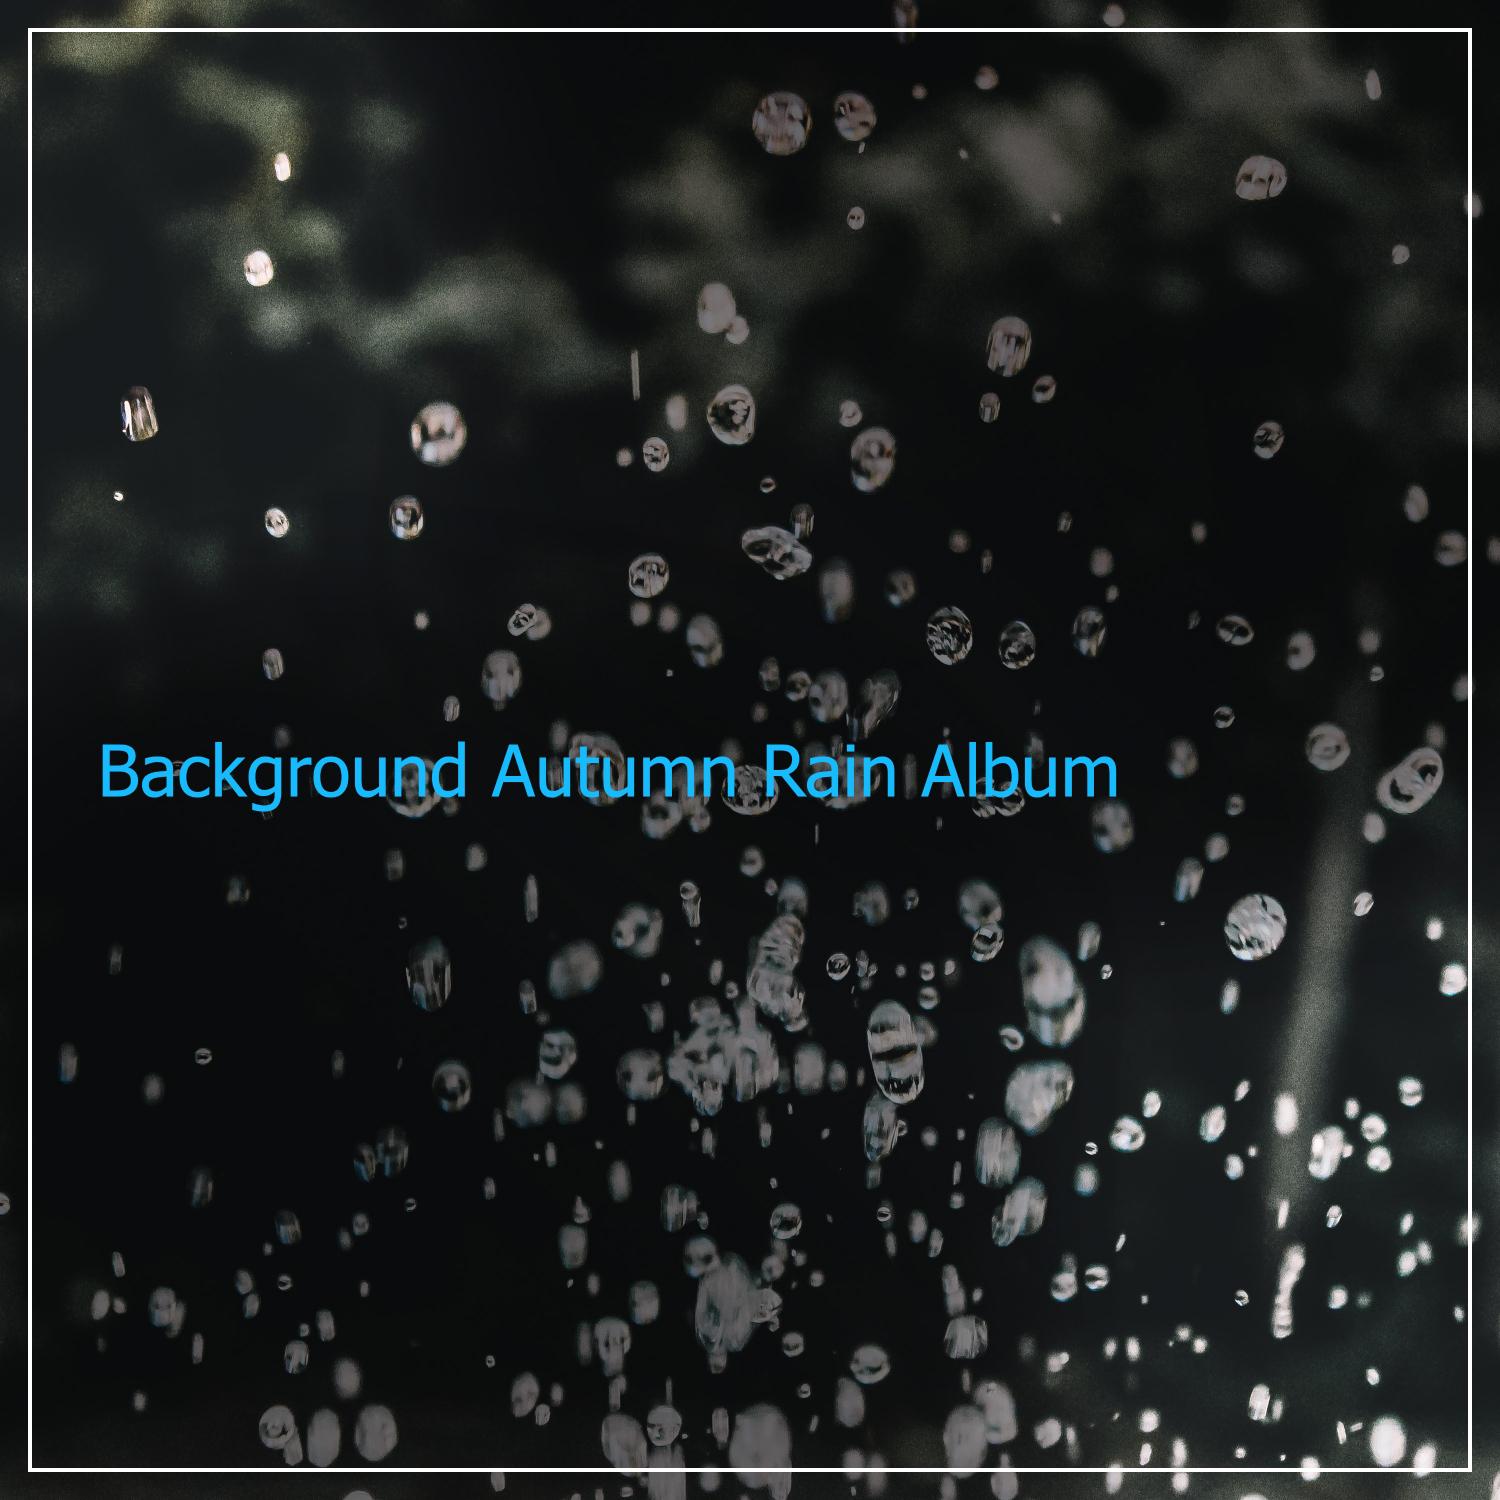 #1 Hour of Background Autumn Rain Album